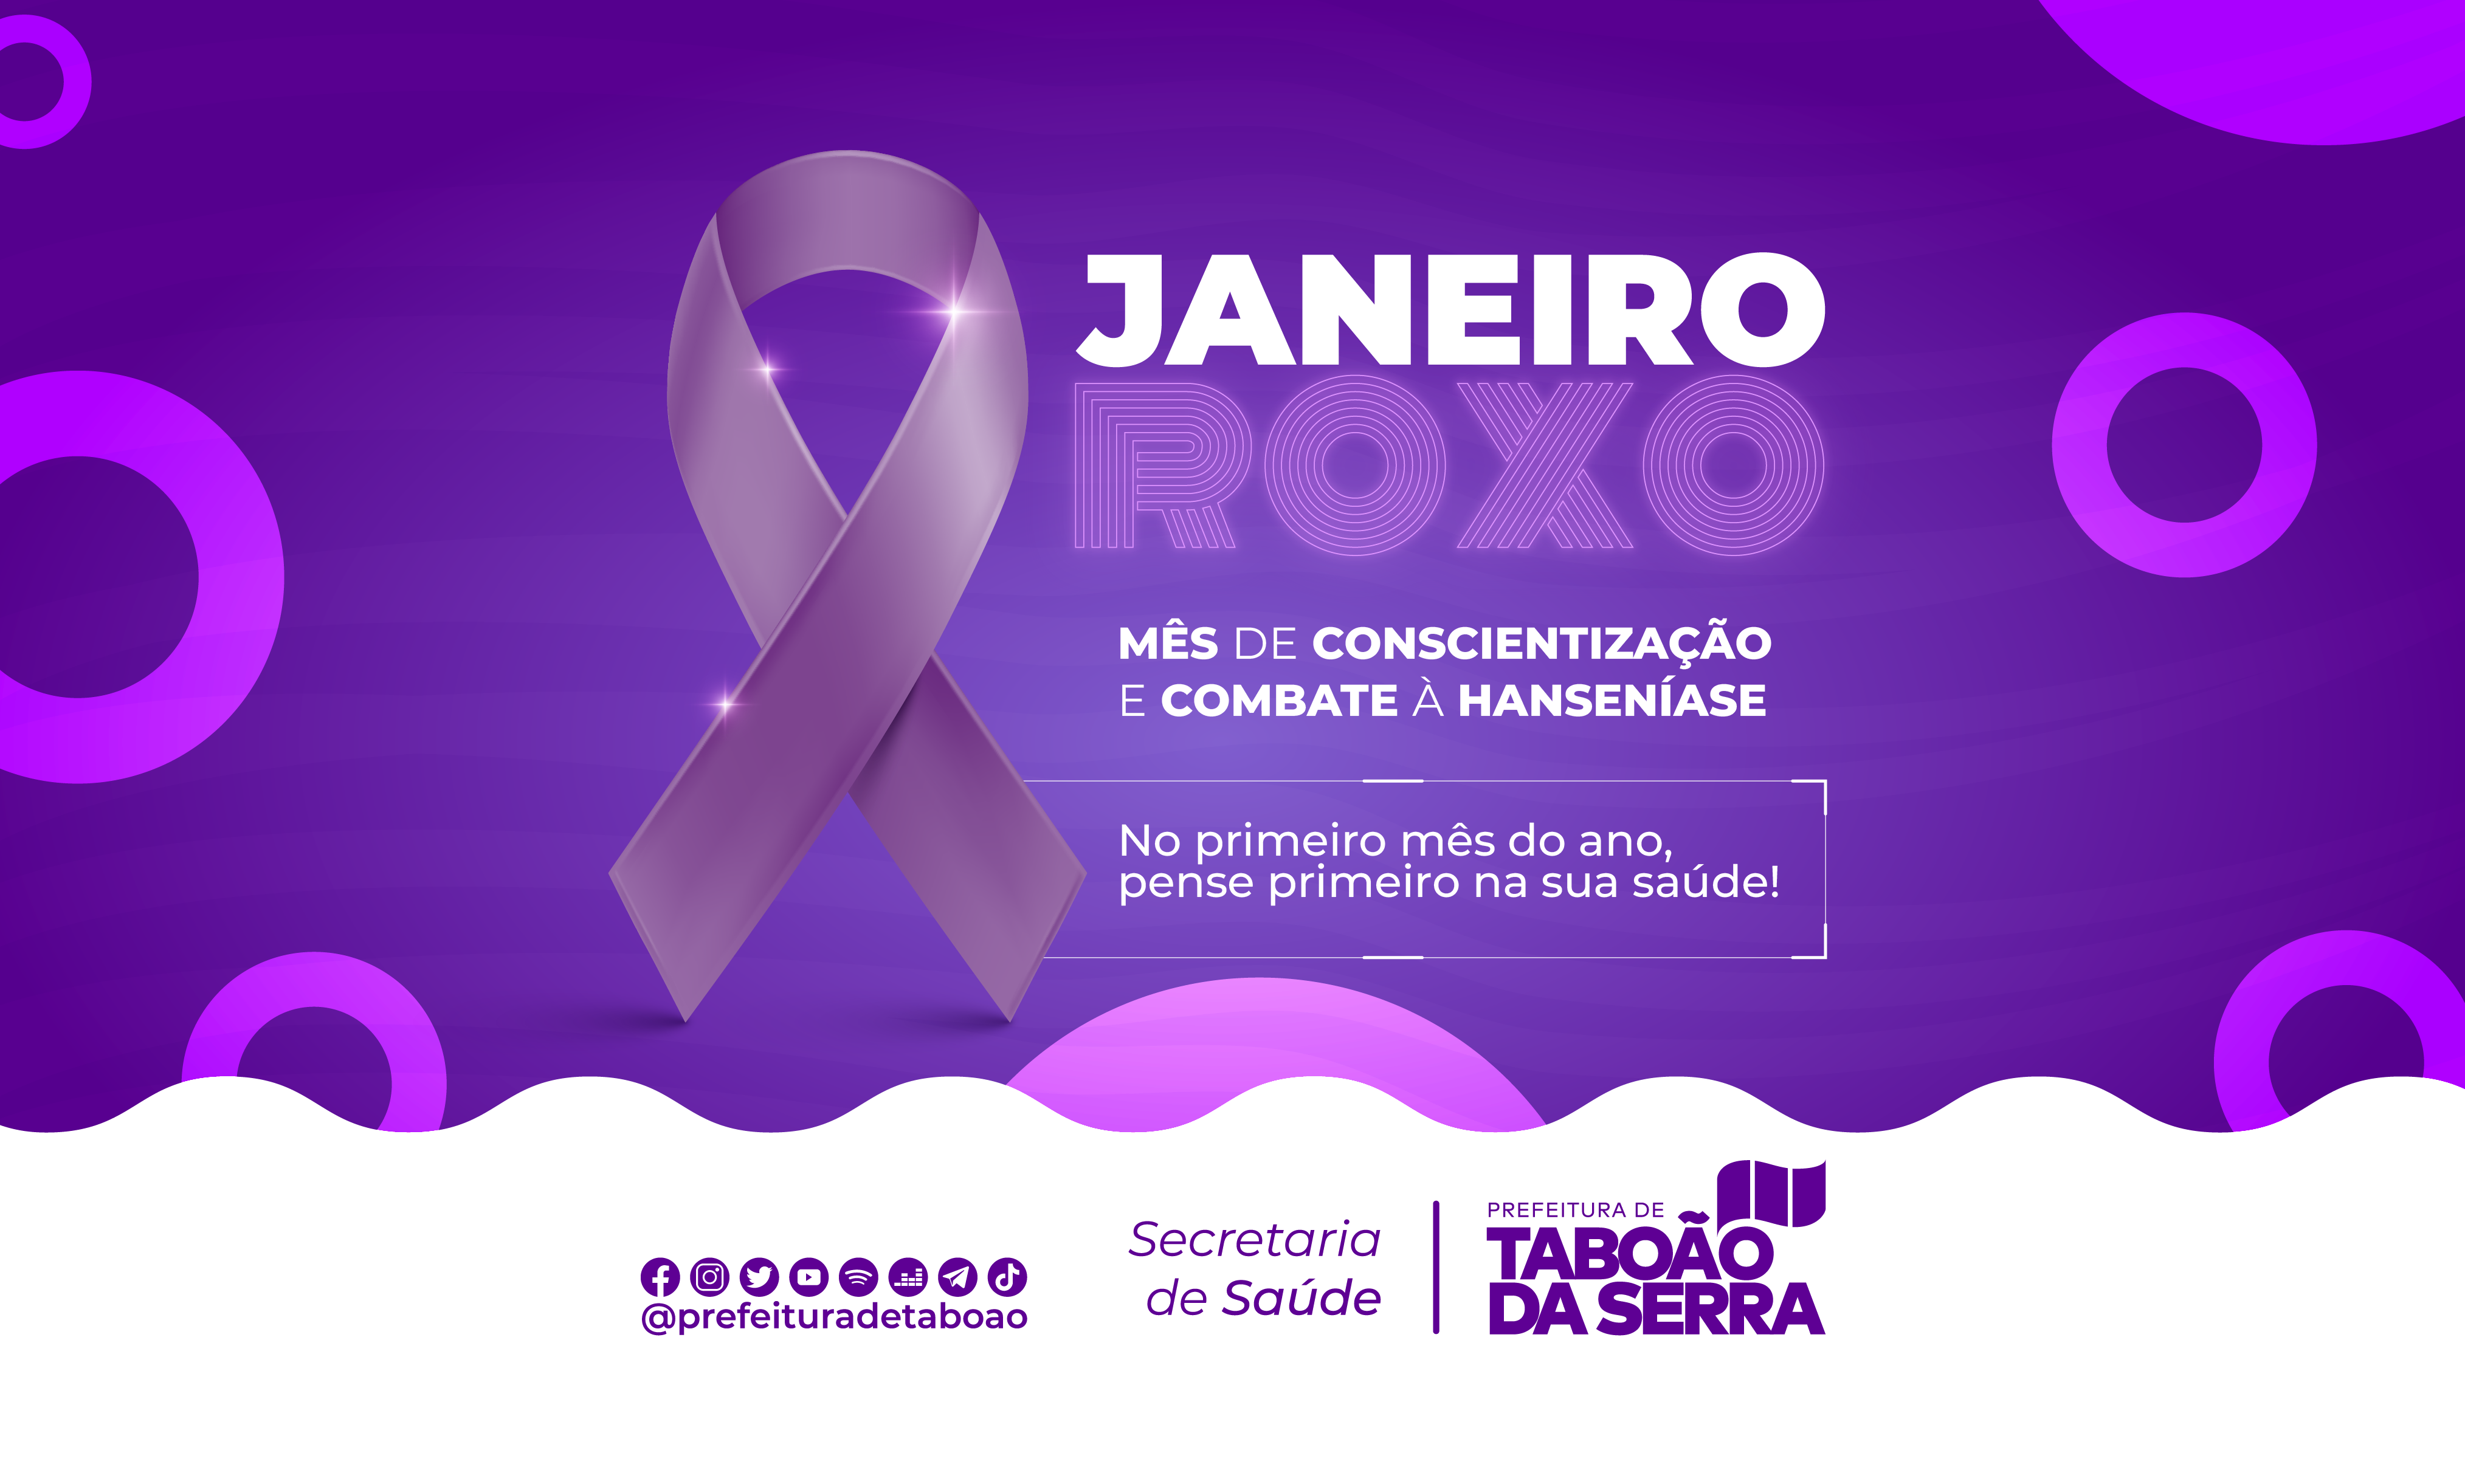 Prefeitura de Taboão da Serra está em campanha pelo Janeiro Roxo